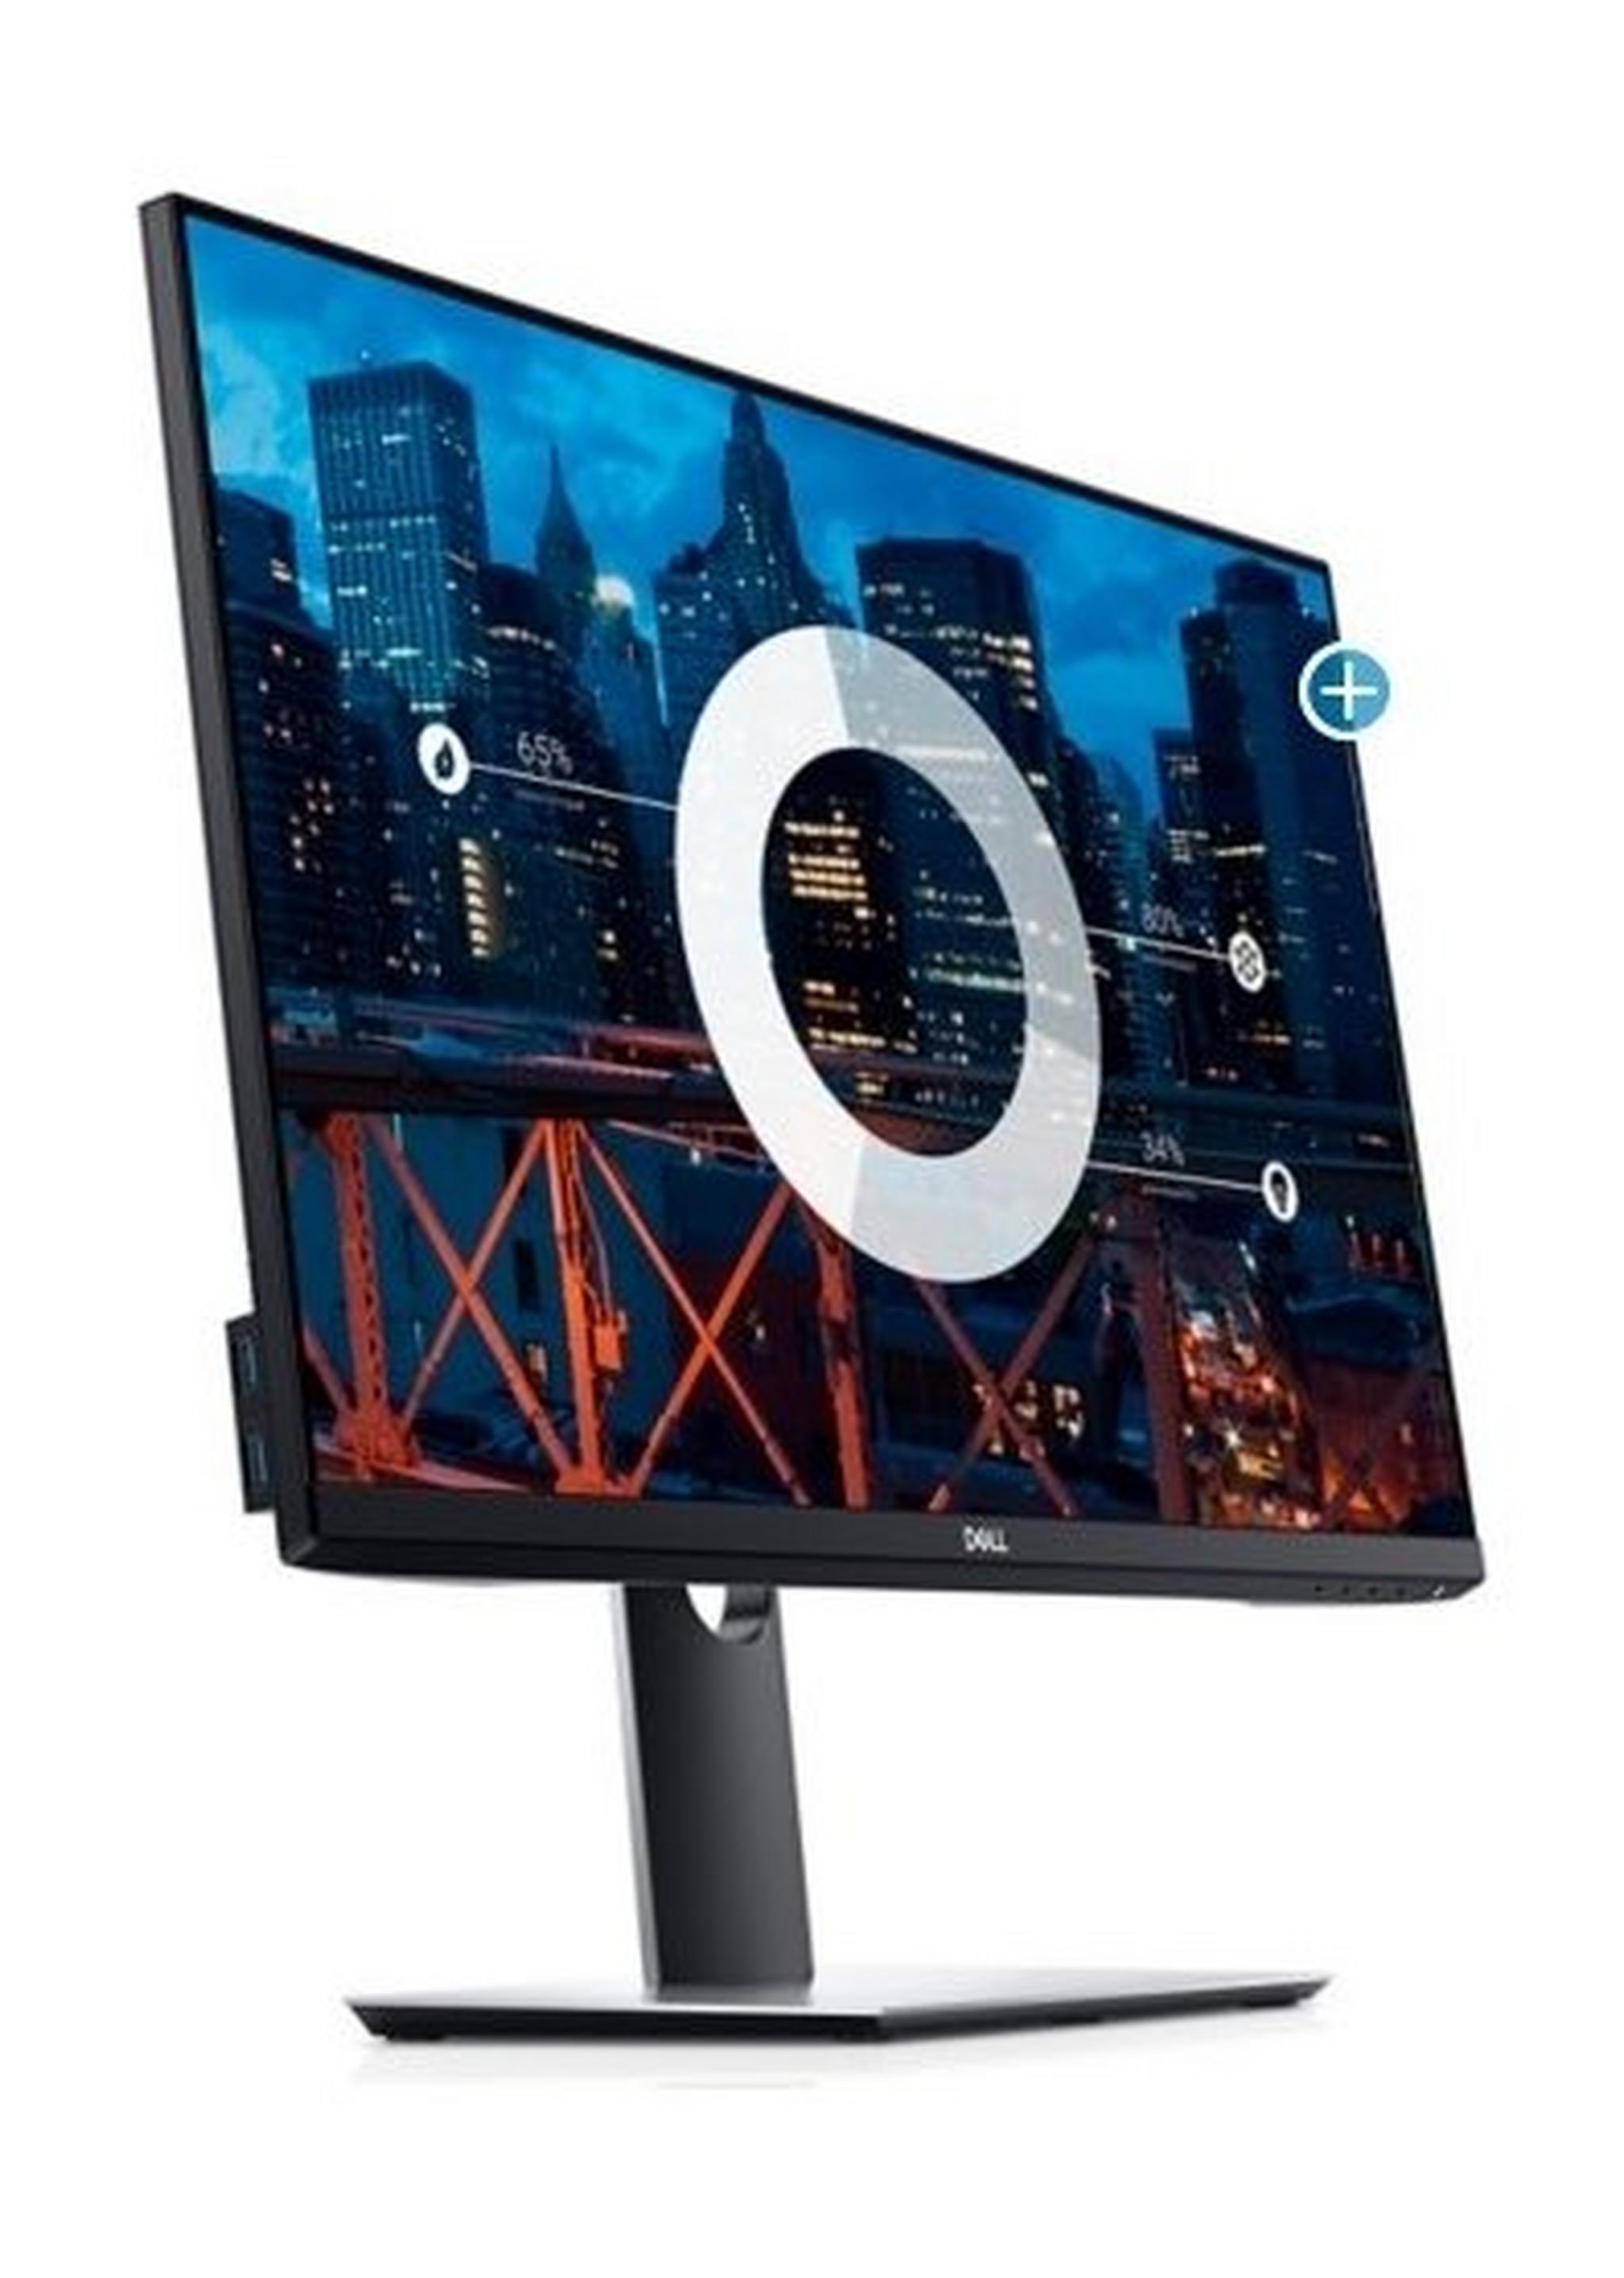 Dell 27" LCD Monitor - 210-APXF